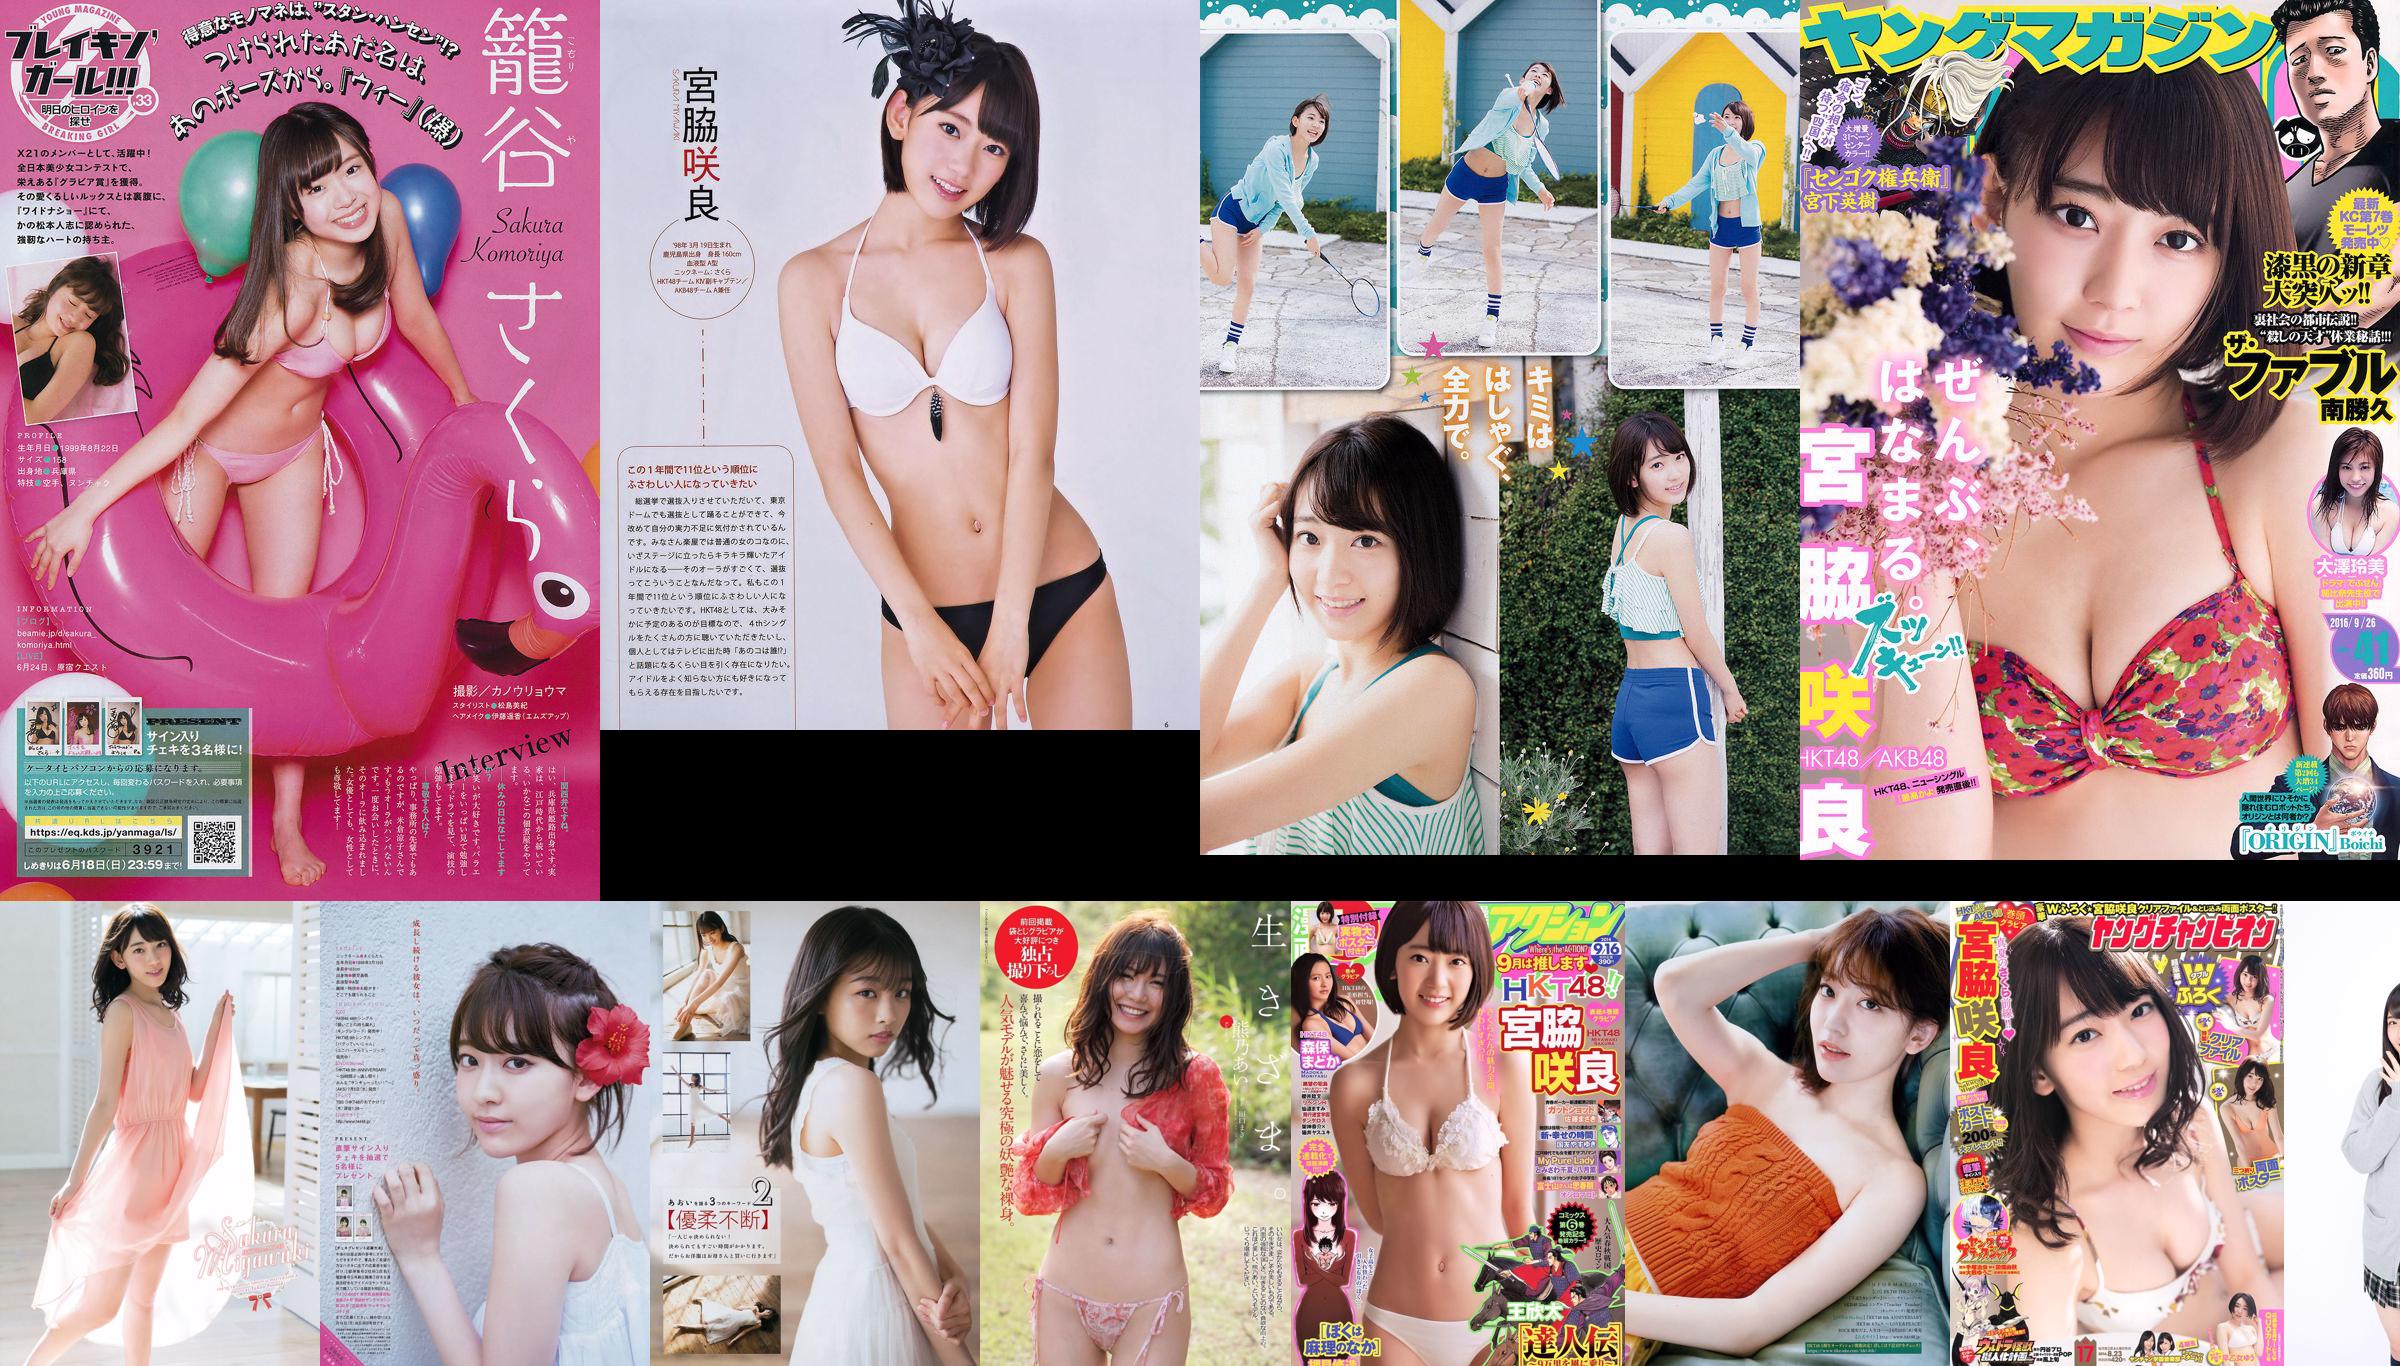 Miyawaki Sakura, Kodama Haruka, Asacho Mi Sakura, Matsuoka Nasaki, Anai Chihiro [Hewan Muda] 2015 Majalah Foto No. 10 No.23343d Halaman 3